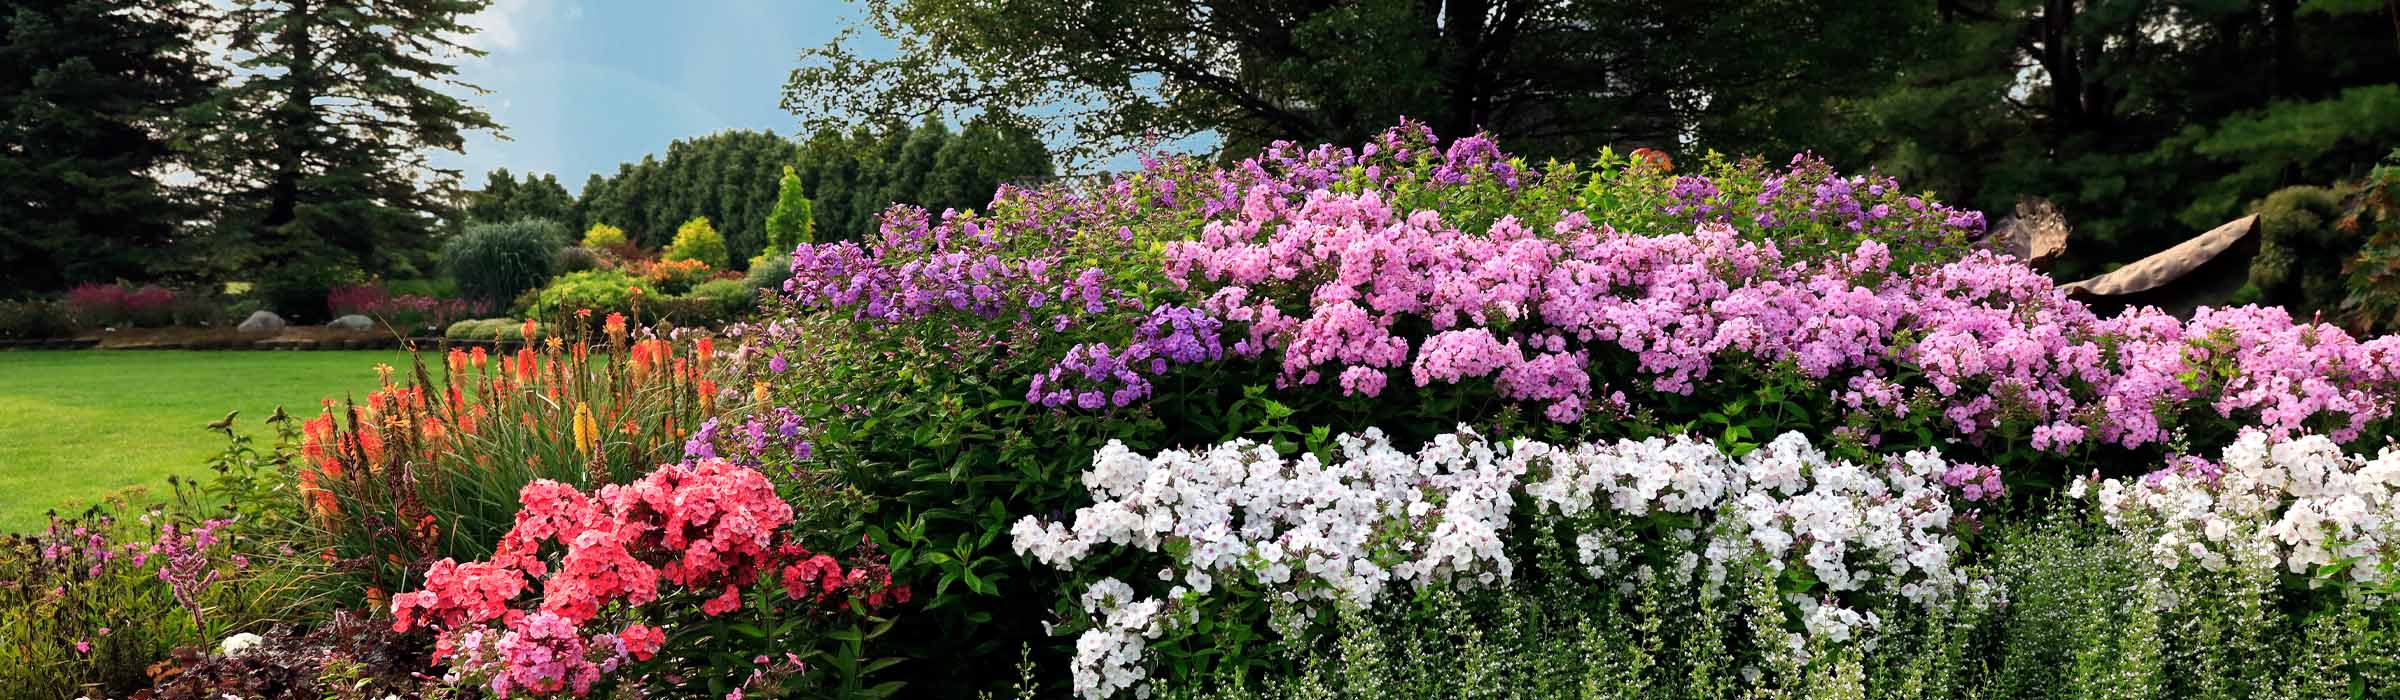 Find perennials at Sugar Creek Gardens